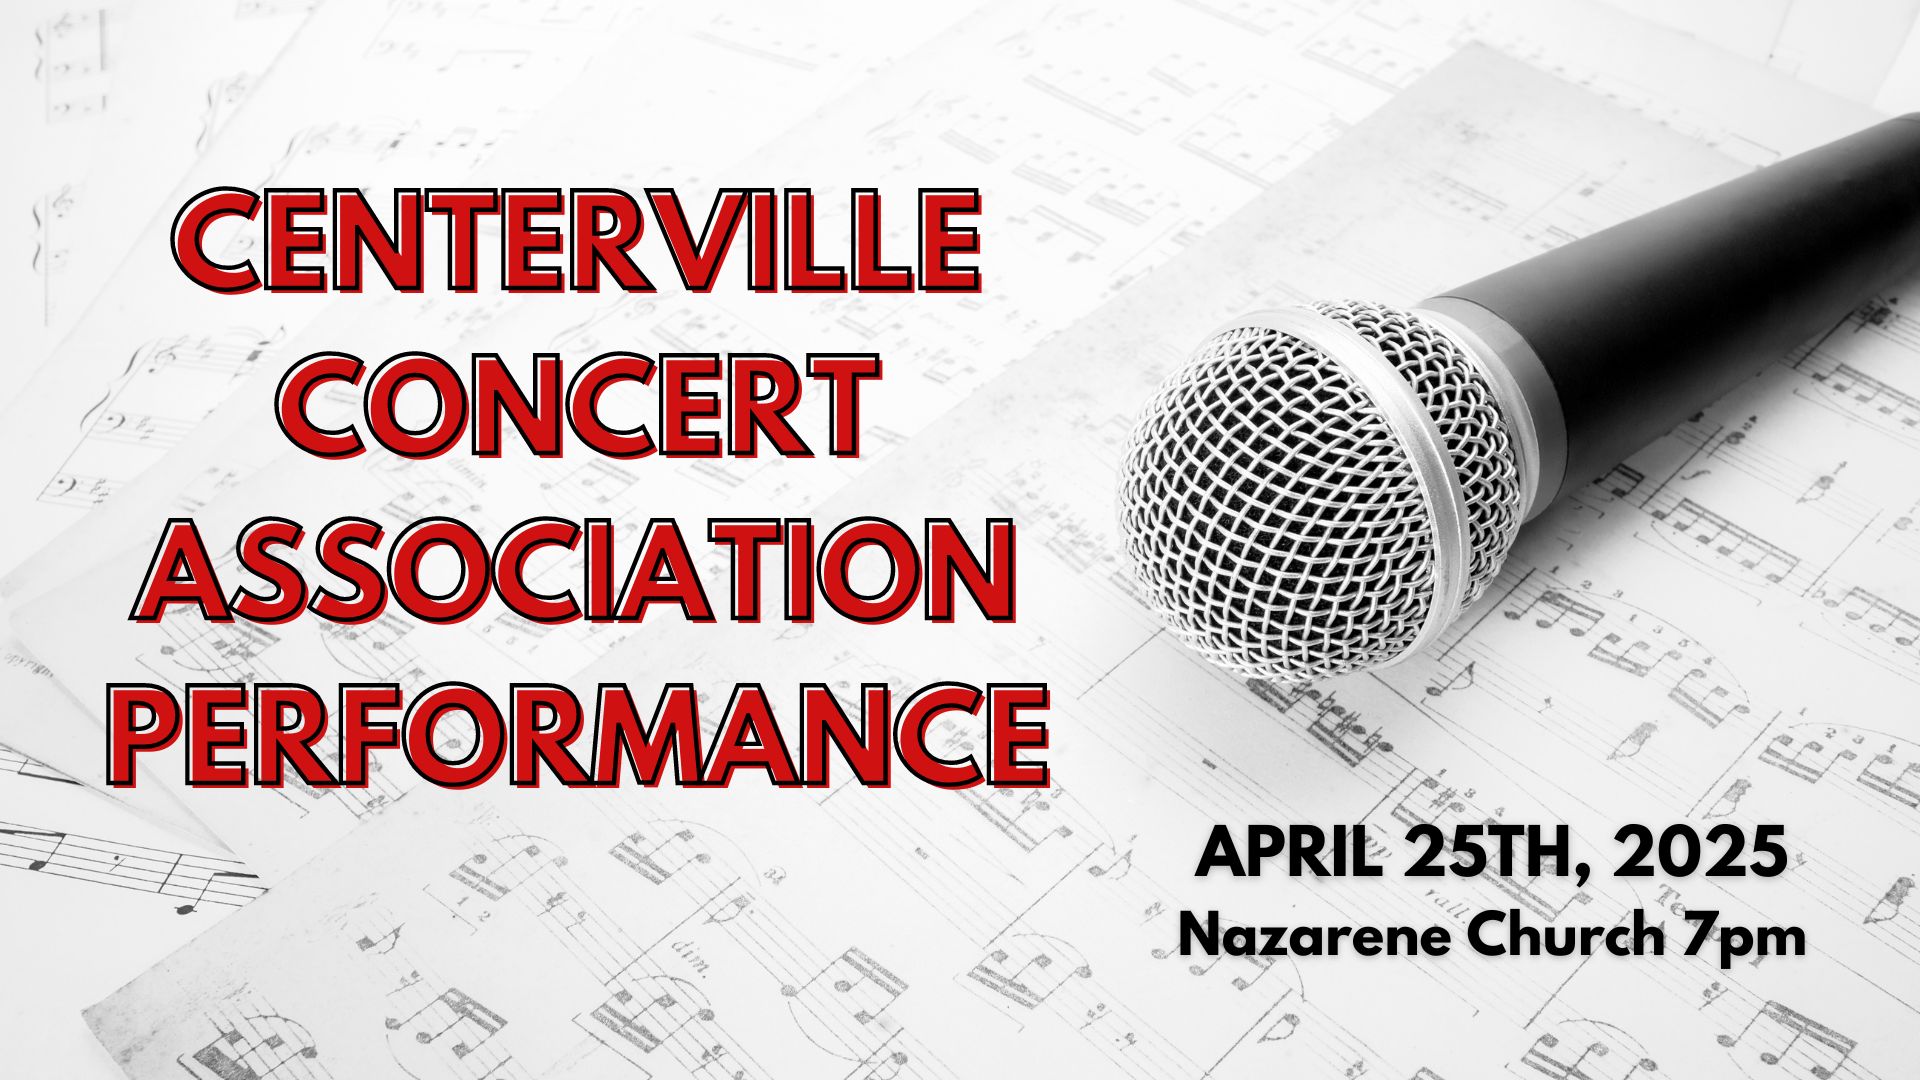 Centerville Concert Association presents: Jim Wittier April 25th